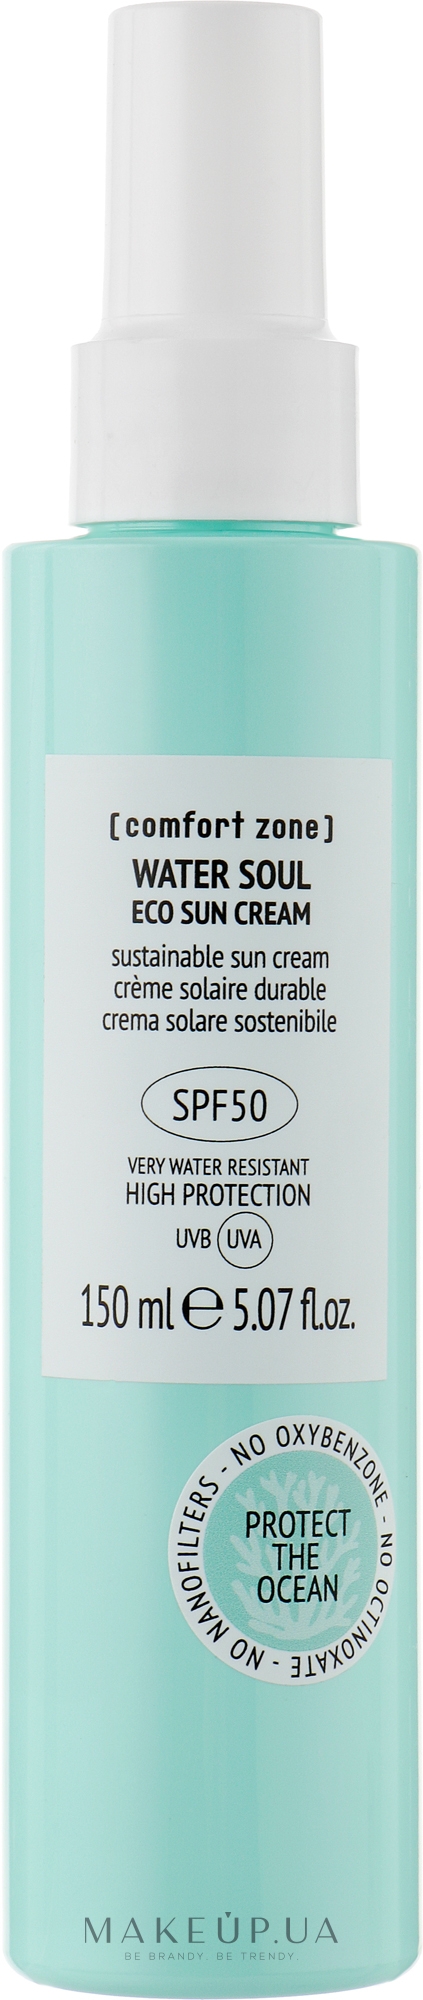 Сонцезахисний крем для обличчя - Comfort Zone Water Soul Eco Sun Cream SPF30 — фото 150ml